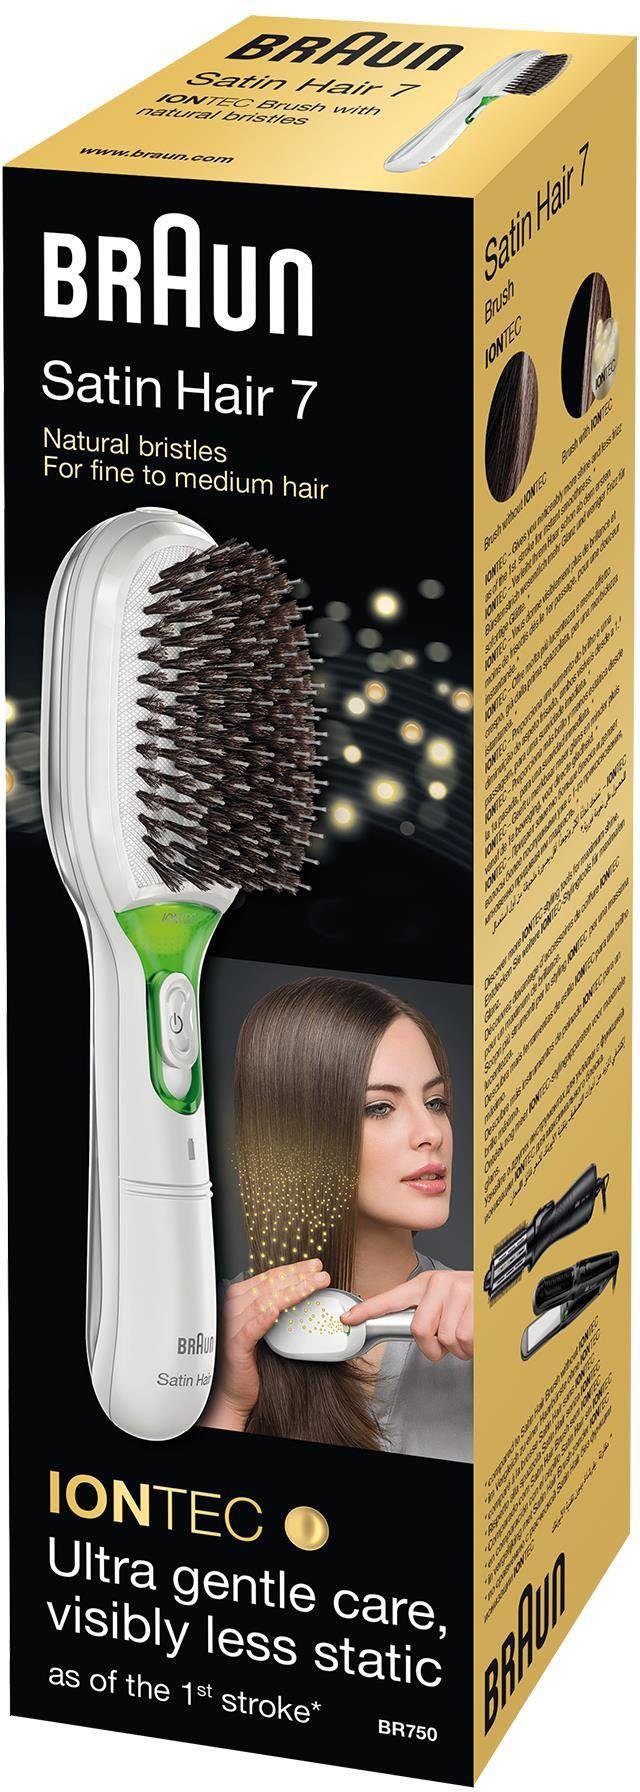 Borsten, 7 natürliche IONTEC Ionen-Technologie Hair zur Glanz-Förderung Satin Haarglättbürste Braun BR750,